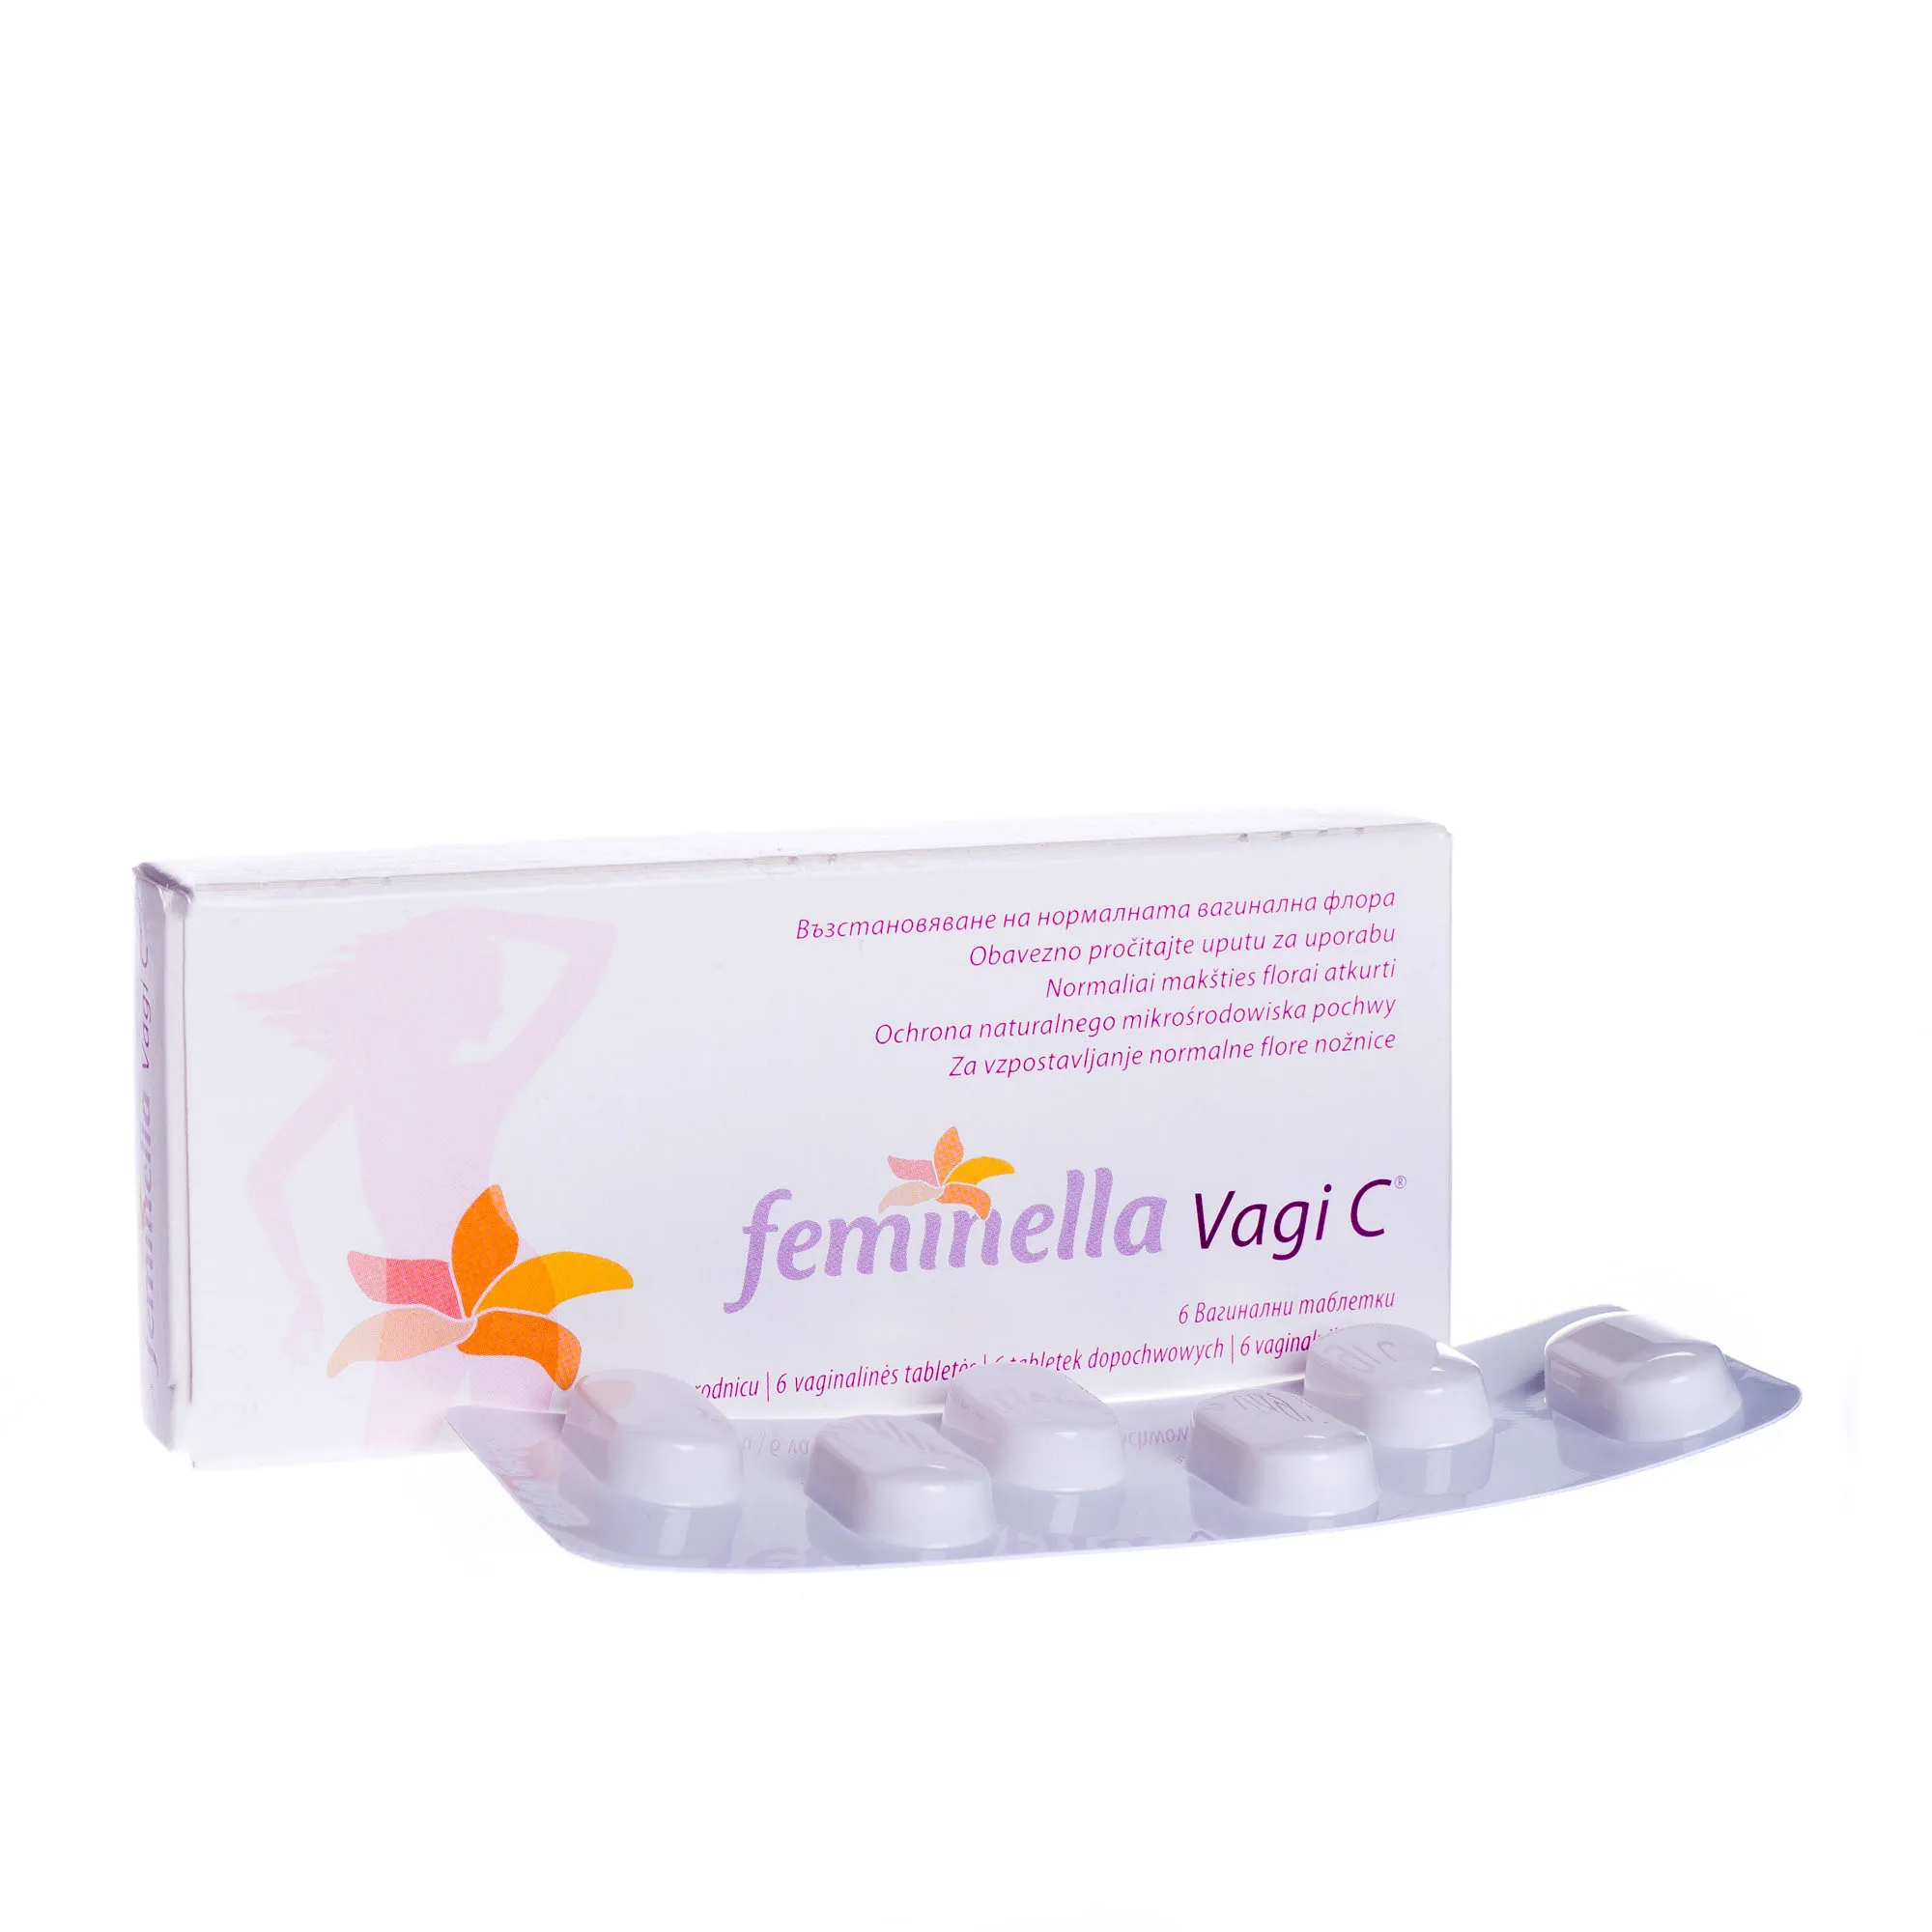 Feminella Vagi C, 6 tabletek dopochwowych